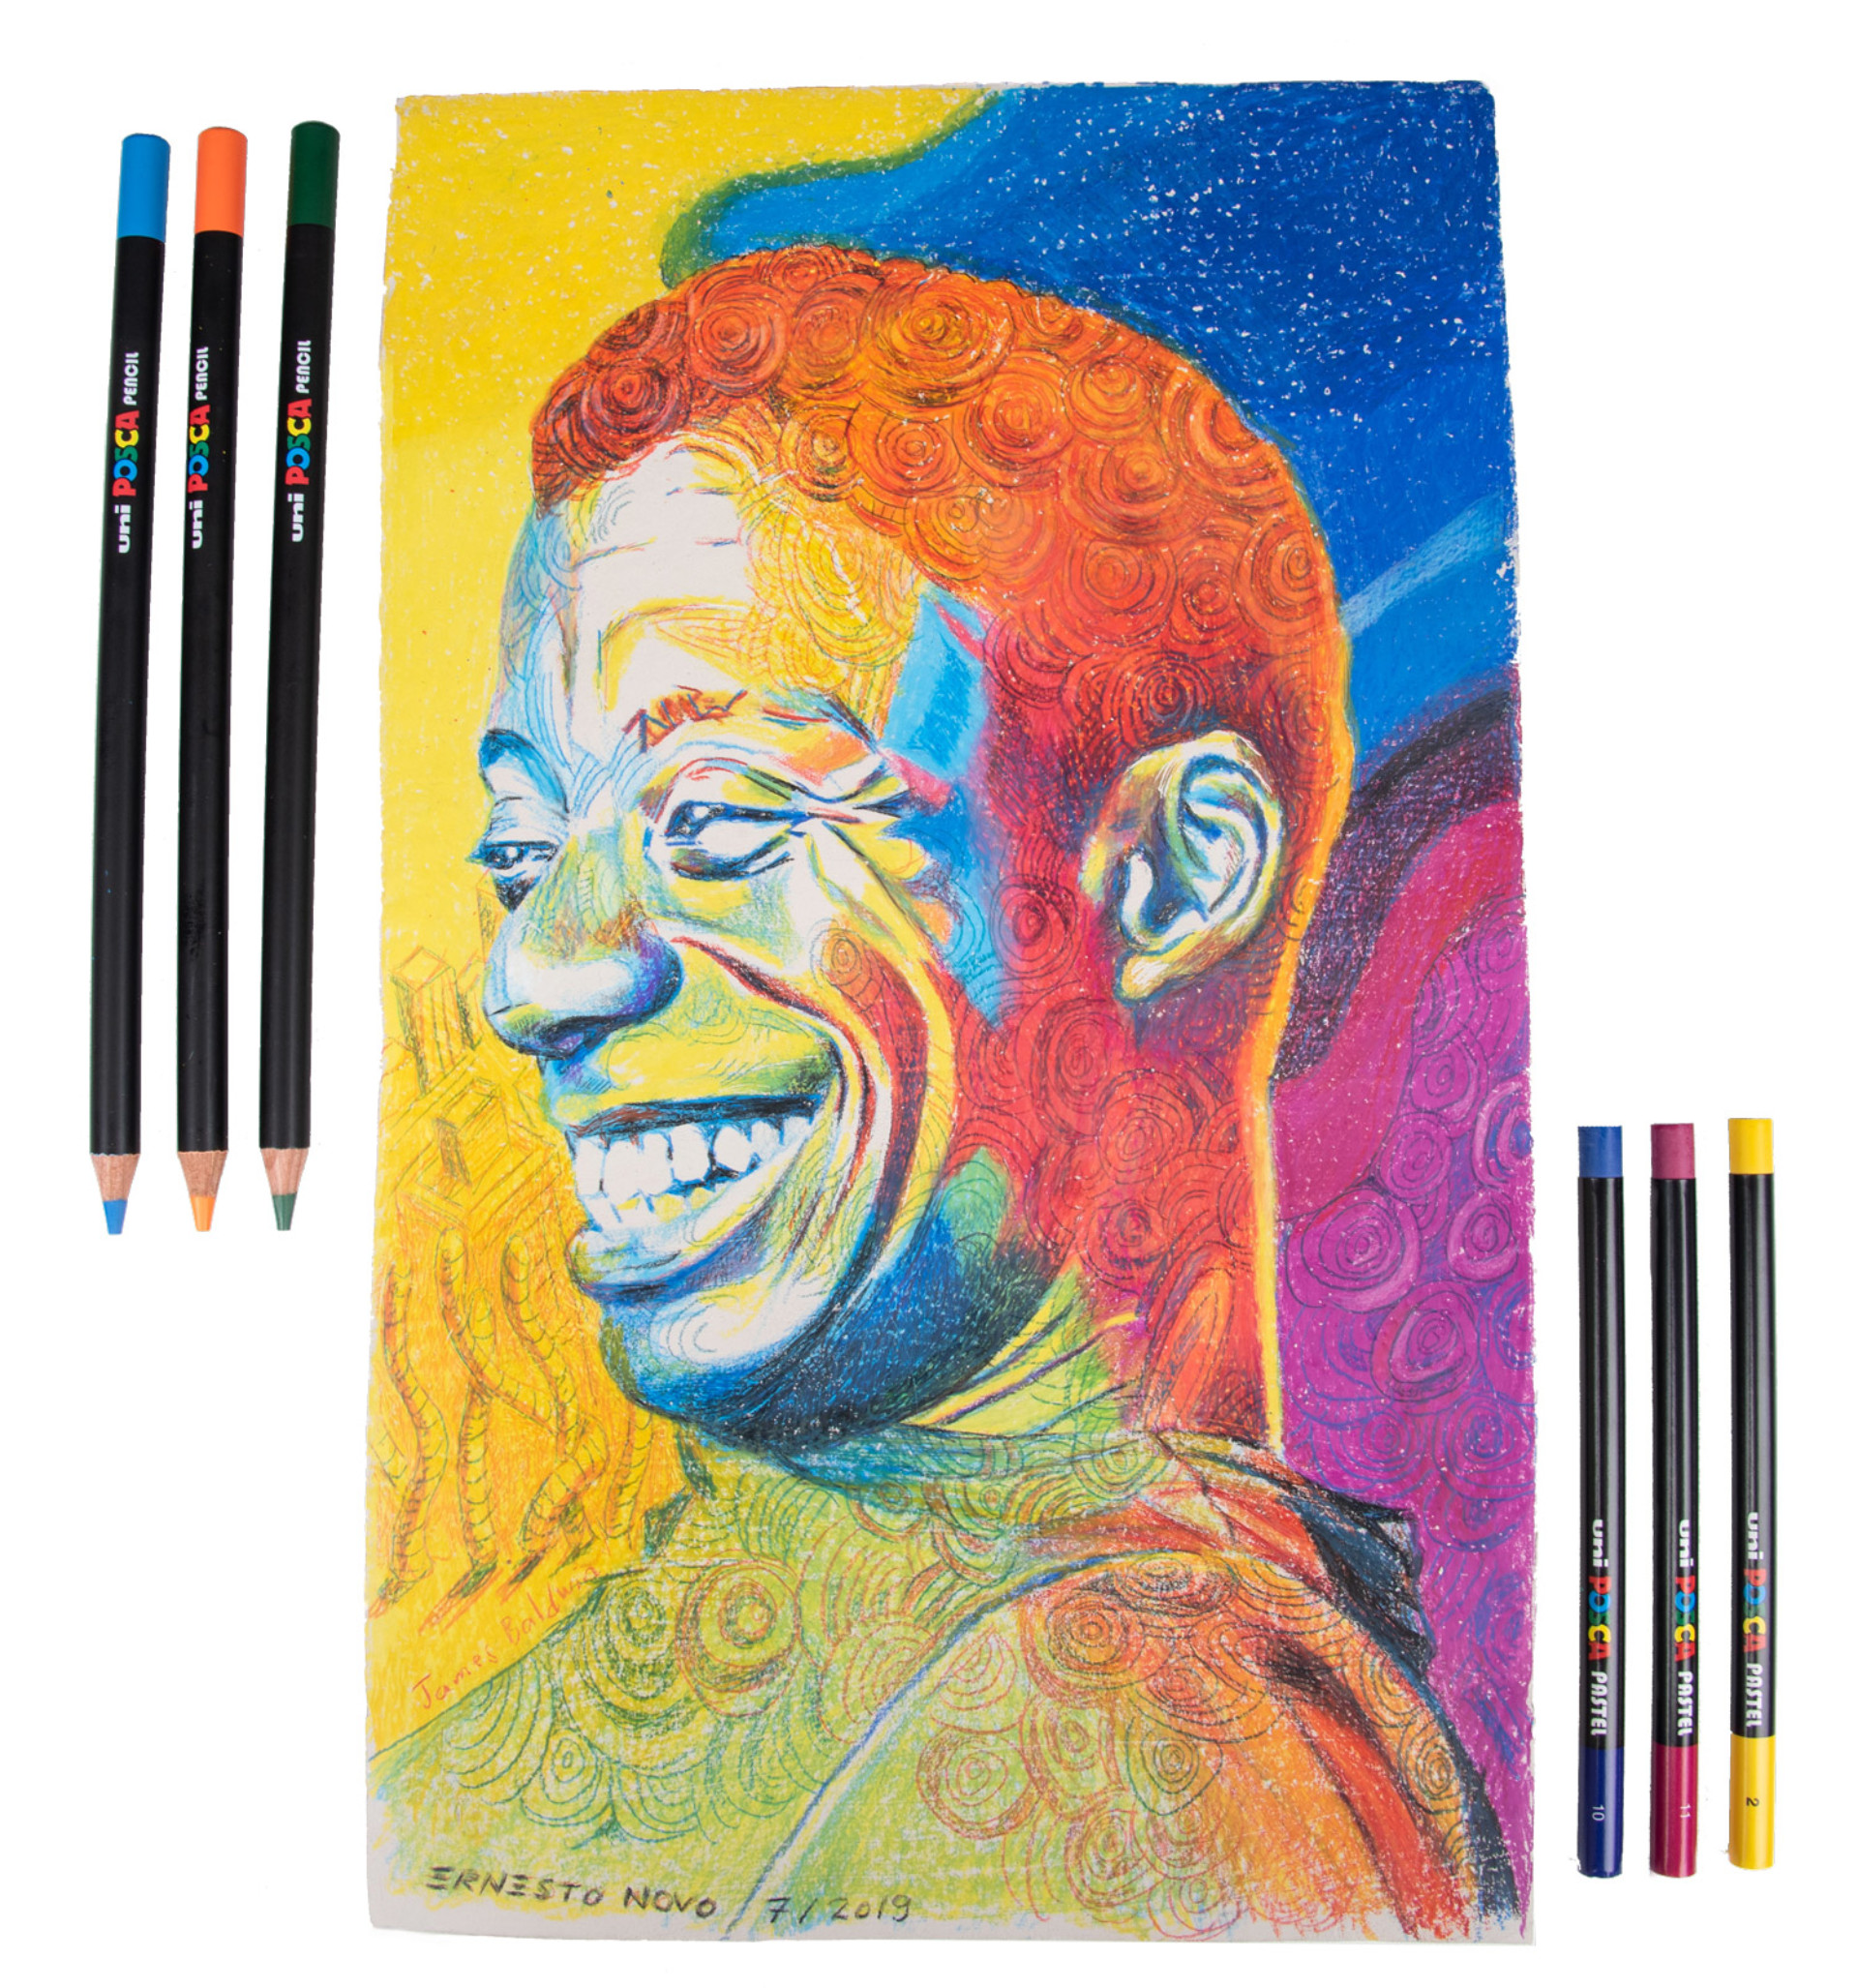 https://www.posca.com/wp-content/uploads/2019/12/posca_portrait-pastel-et-crayon-novo_pastel-1920x0-c-default.jpg